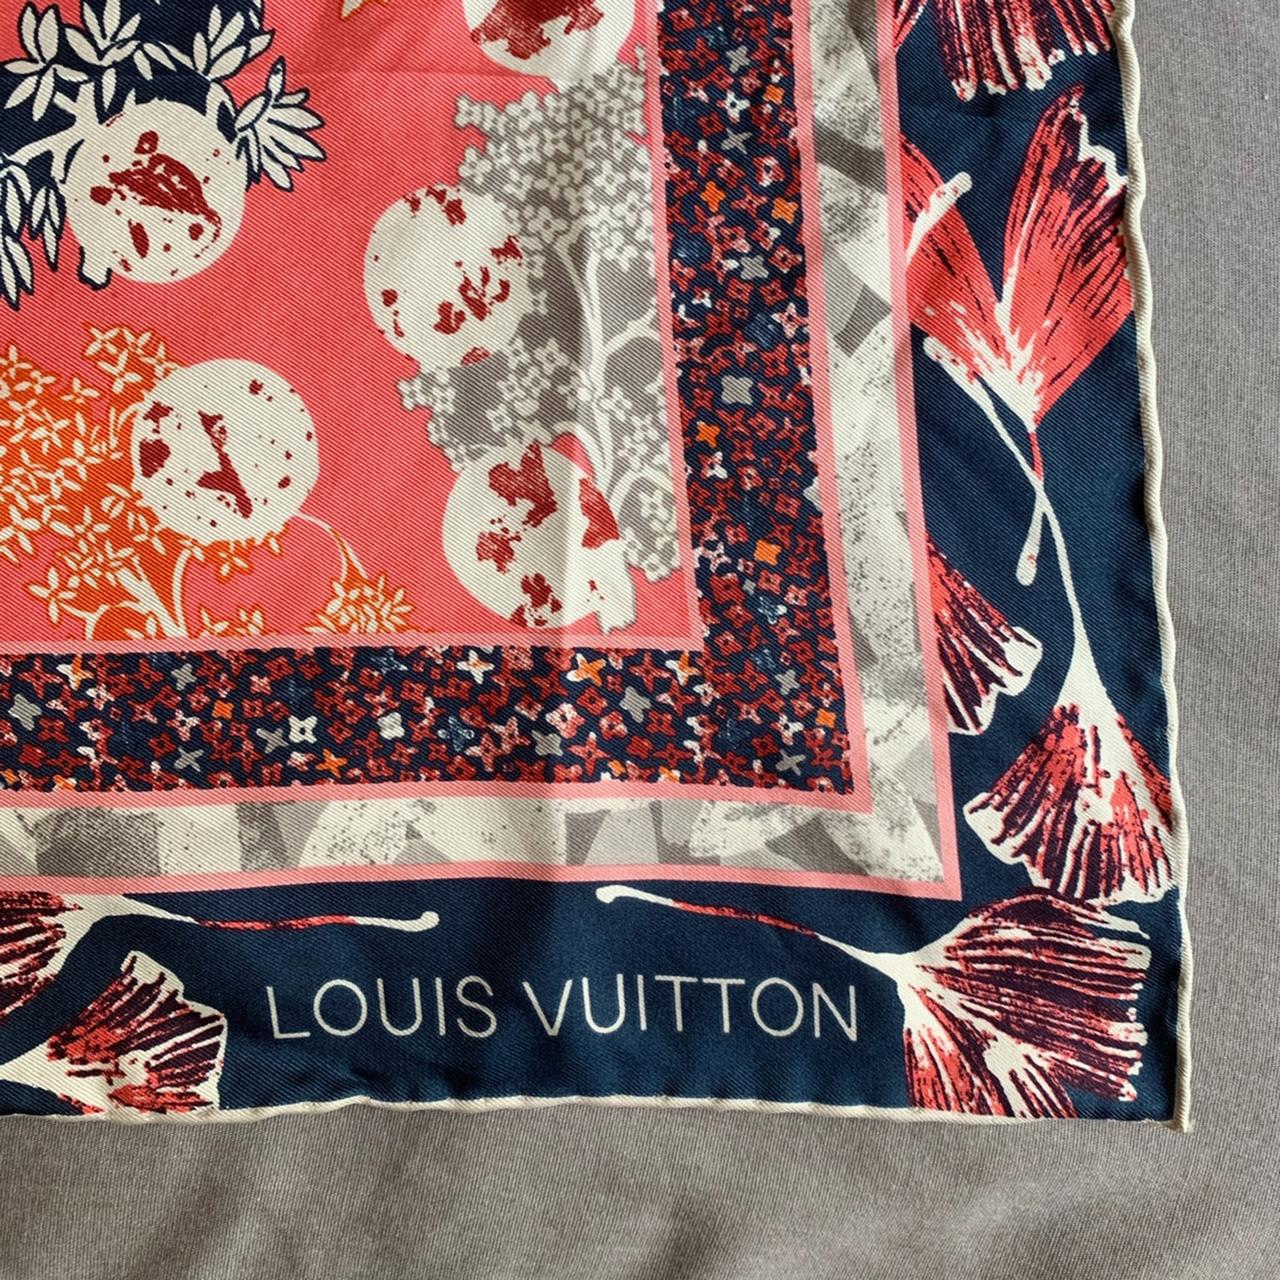 Louis vuitton-scarves - Depop